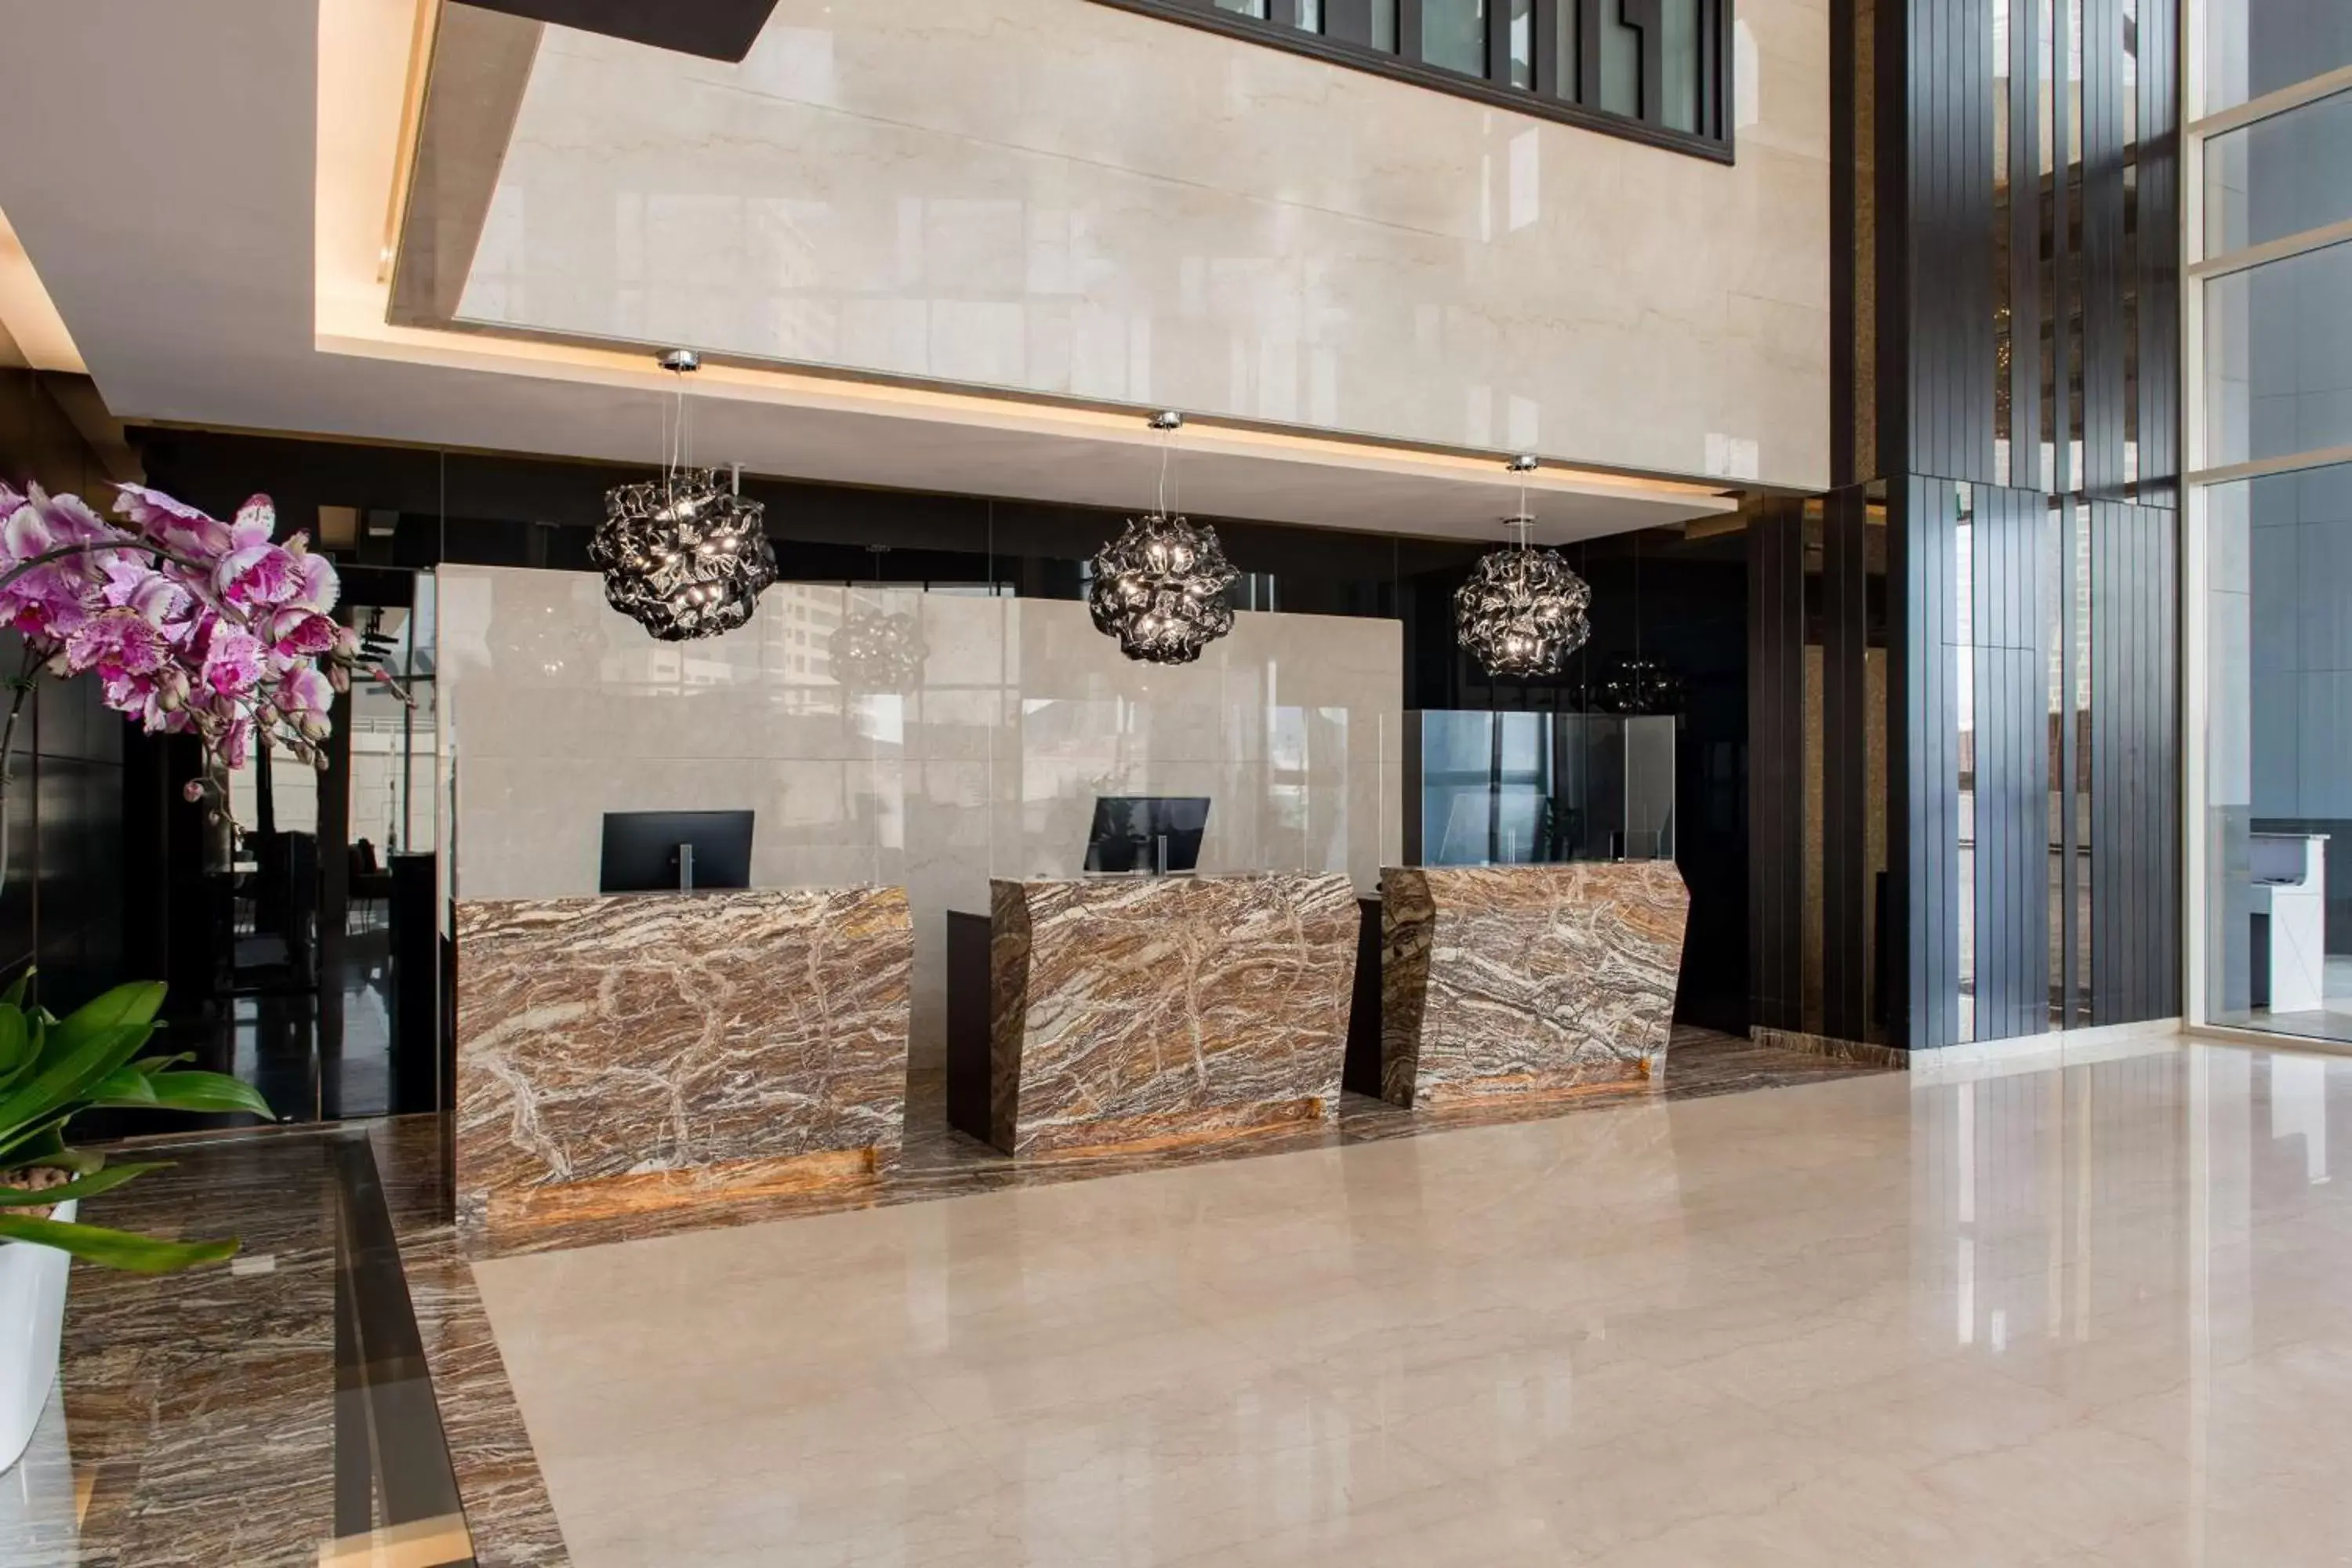 Lobby or reception, Lobby/Reception in Radisson Blu Hotel, Dubai Canal View